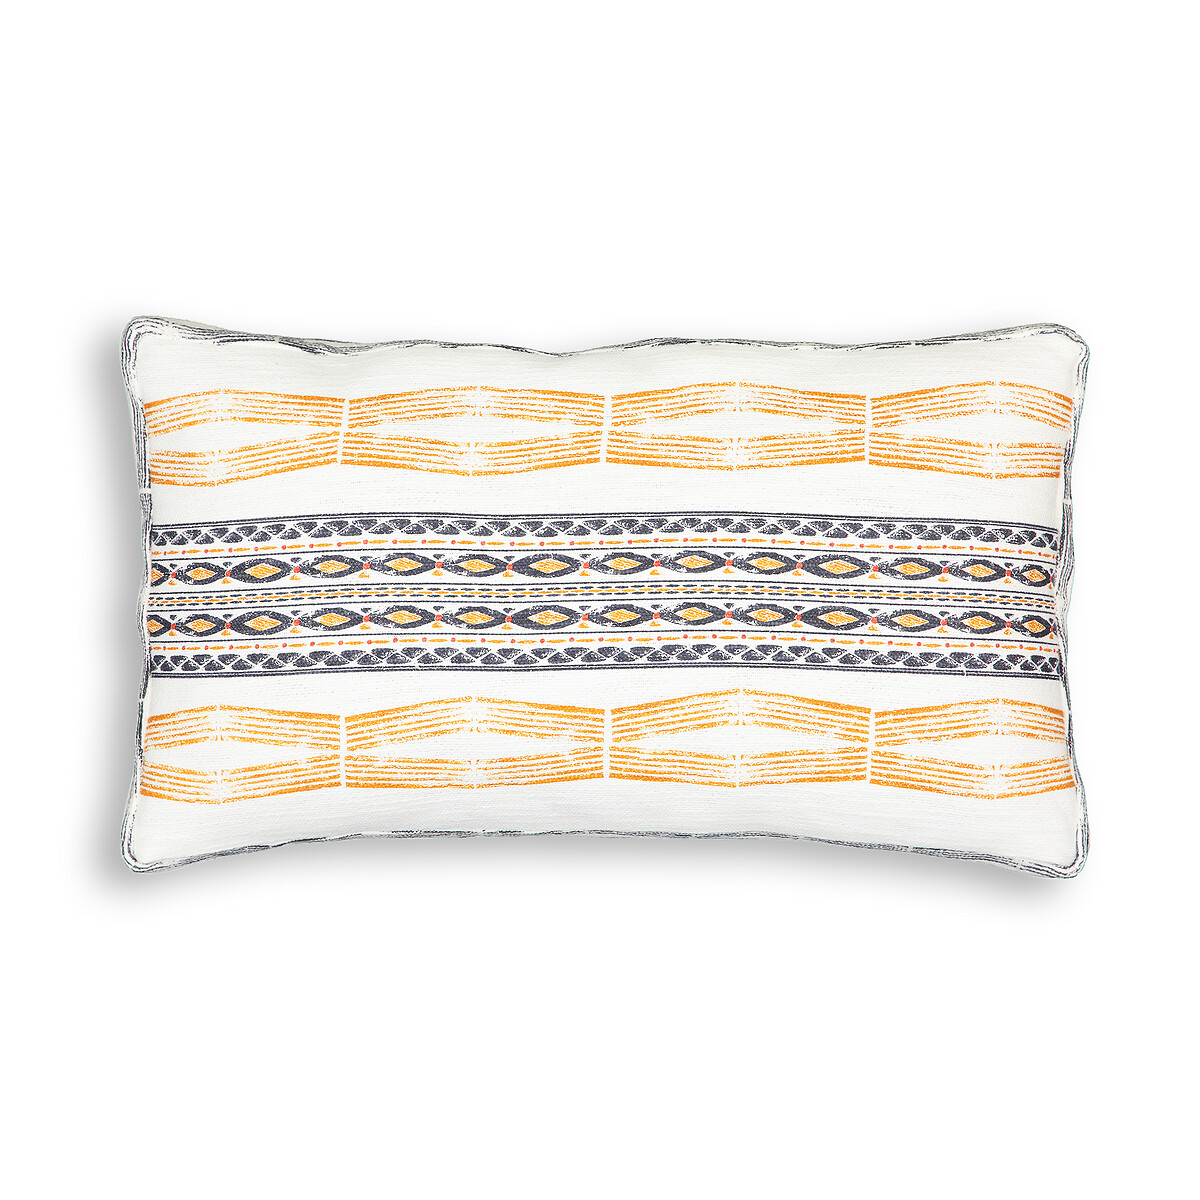 Чехол LaRedoute Для подушки из хлопка Izama 50 x 30 см разноцветный, размер 50 x 30 см